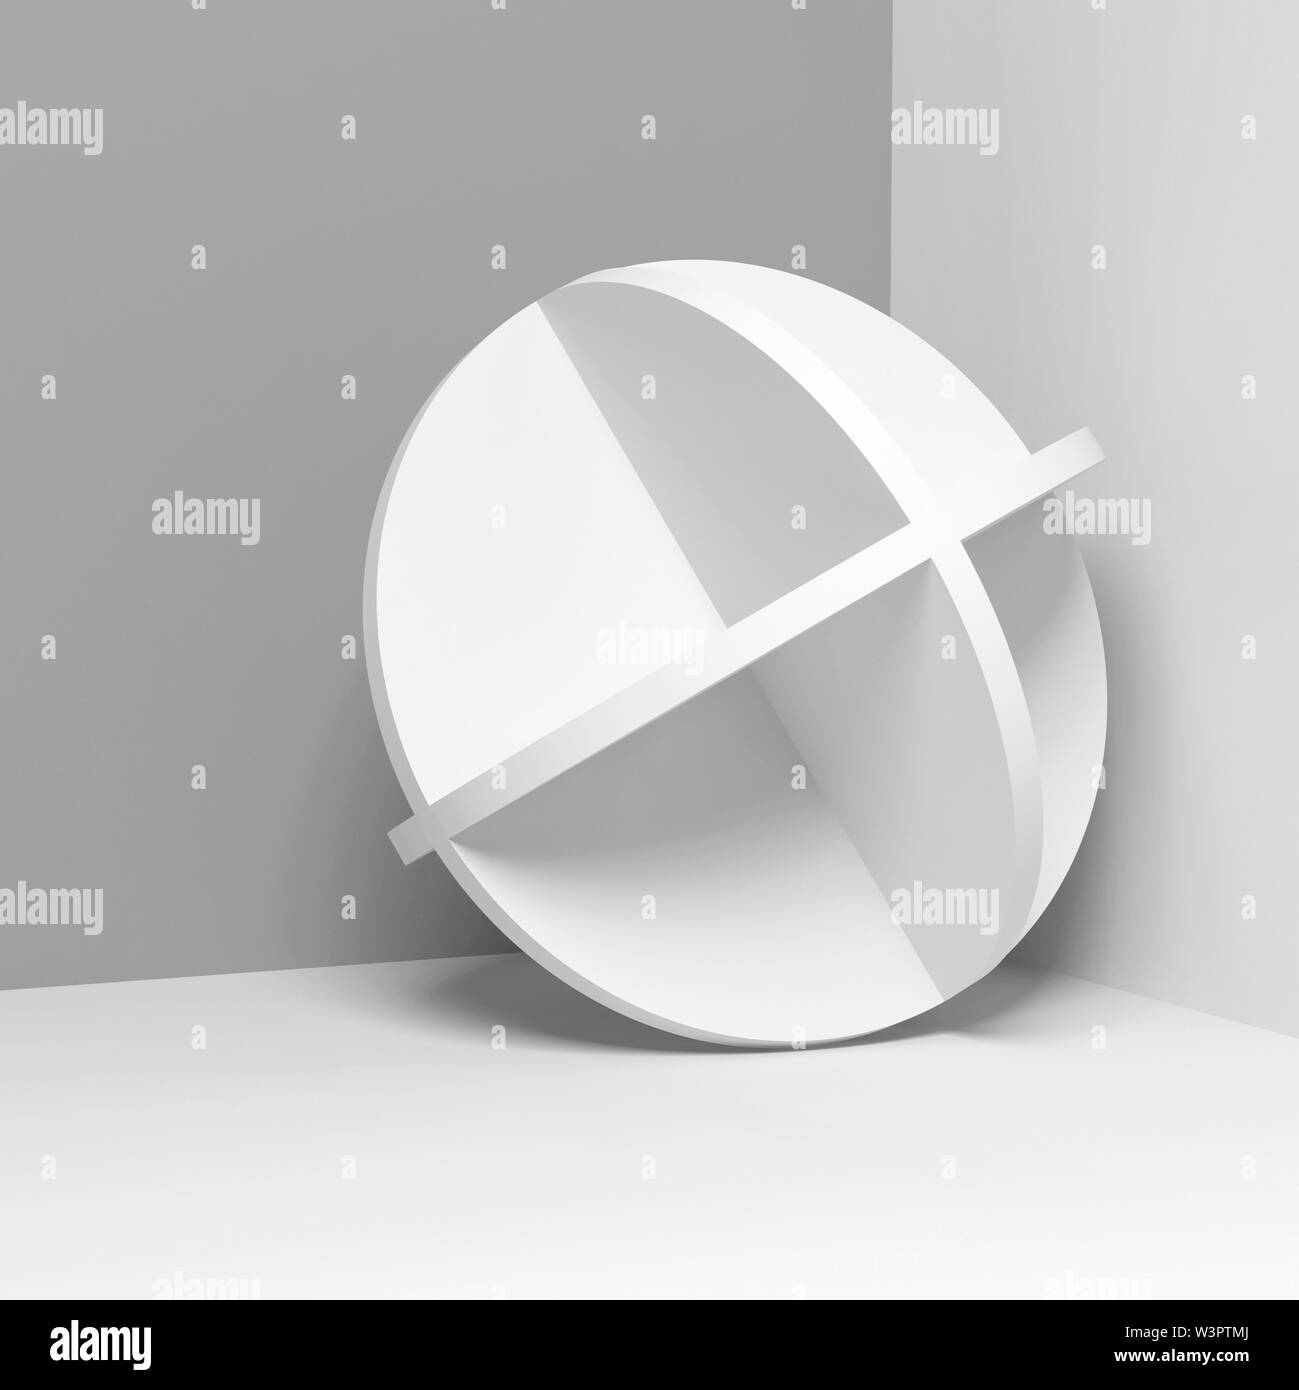 Abstrakte weiße runde Objekt steht in einer Ecke, Quadrat 3D Rendering illustration Stockfoto